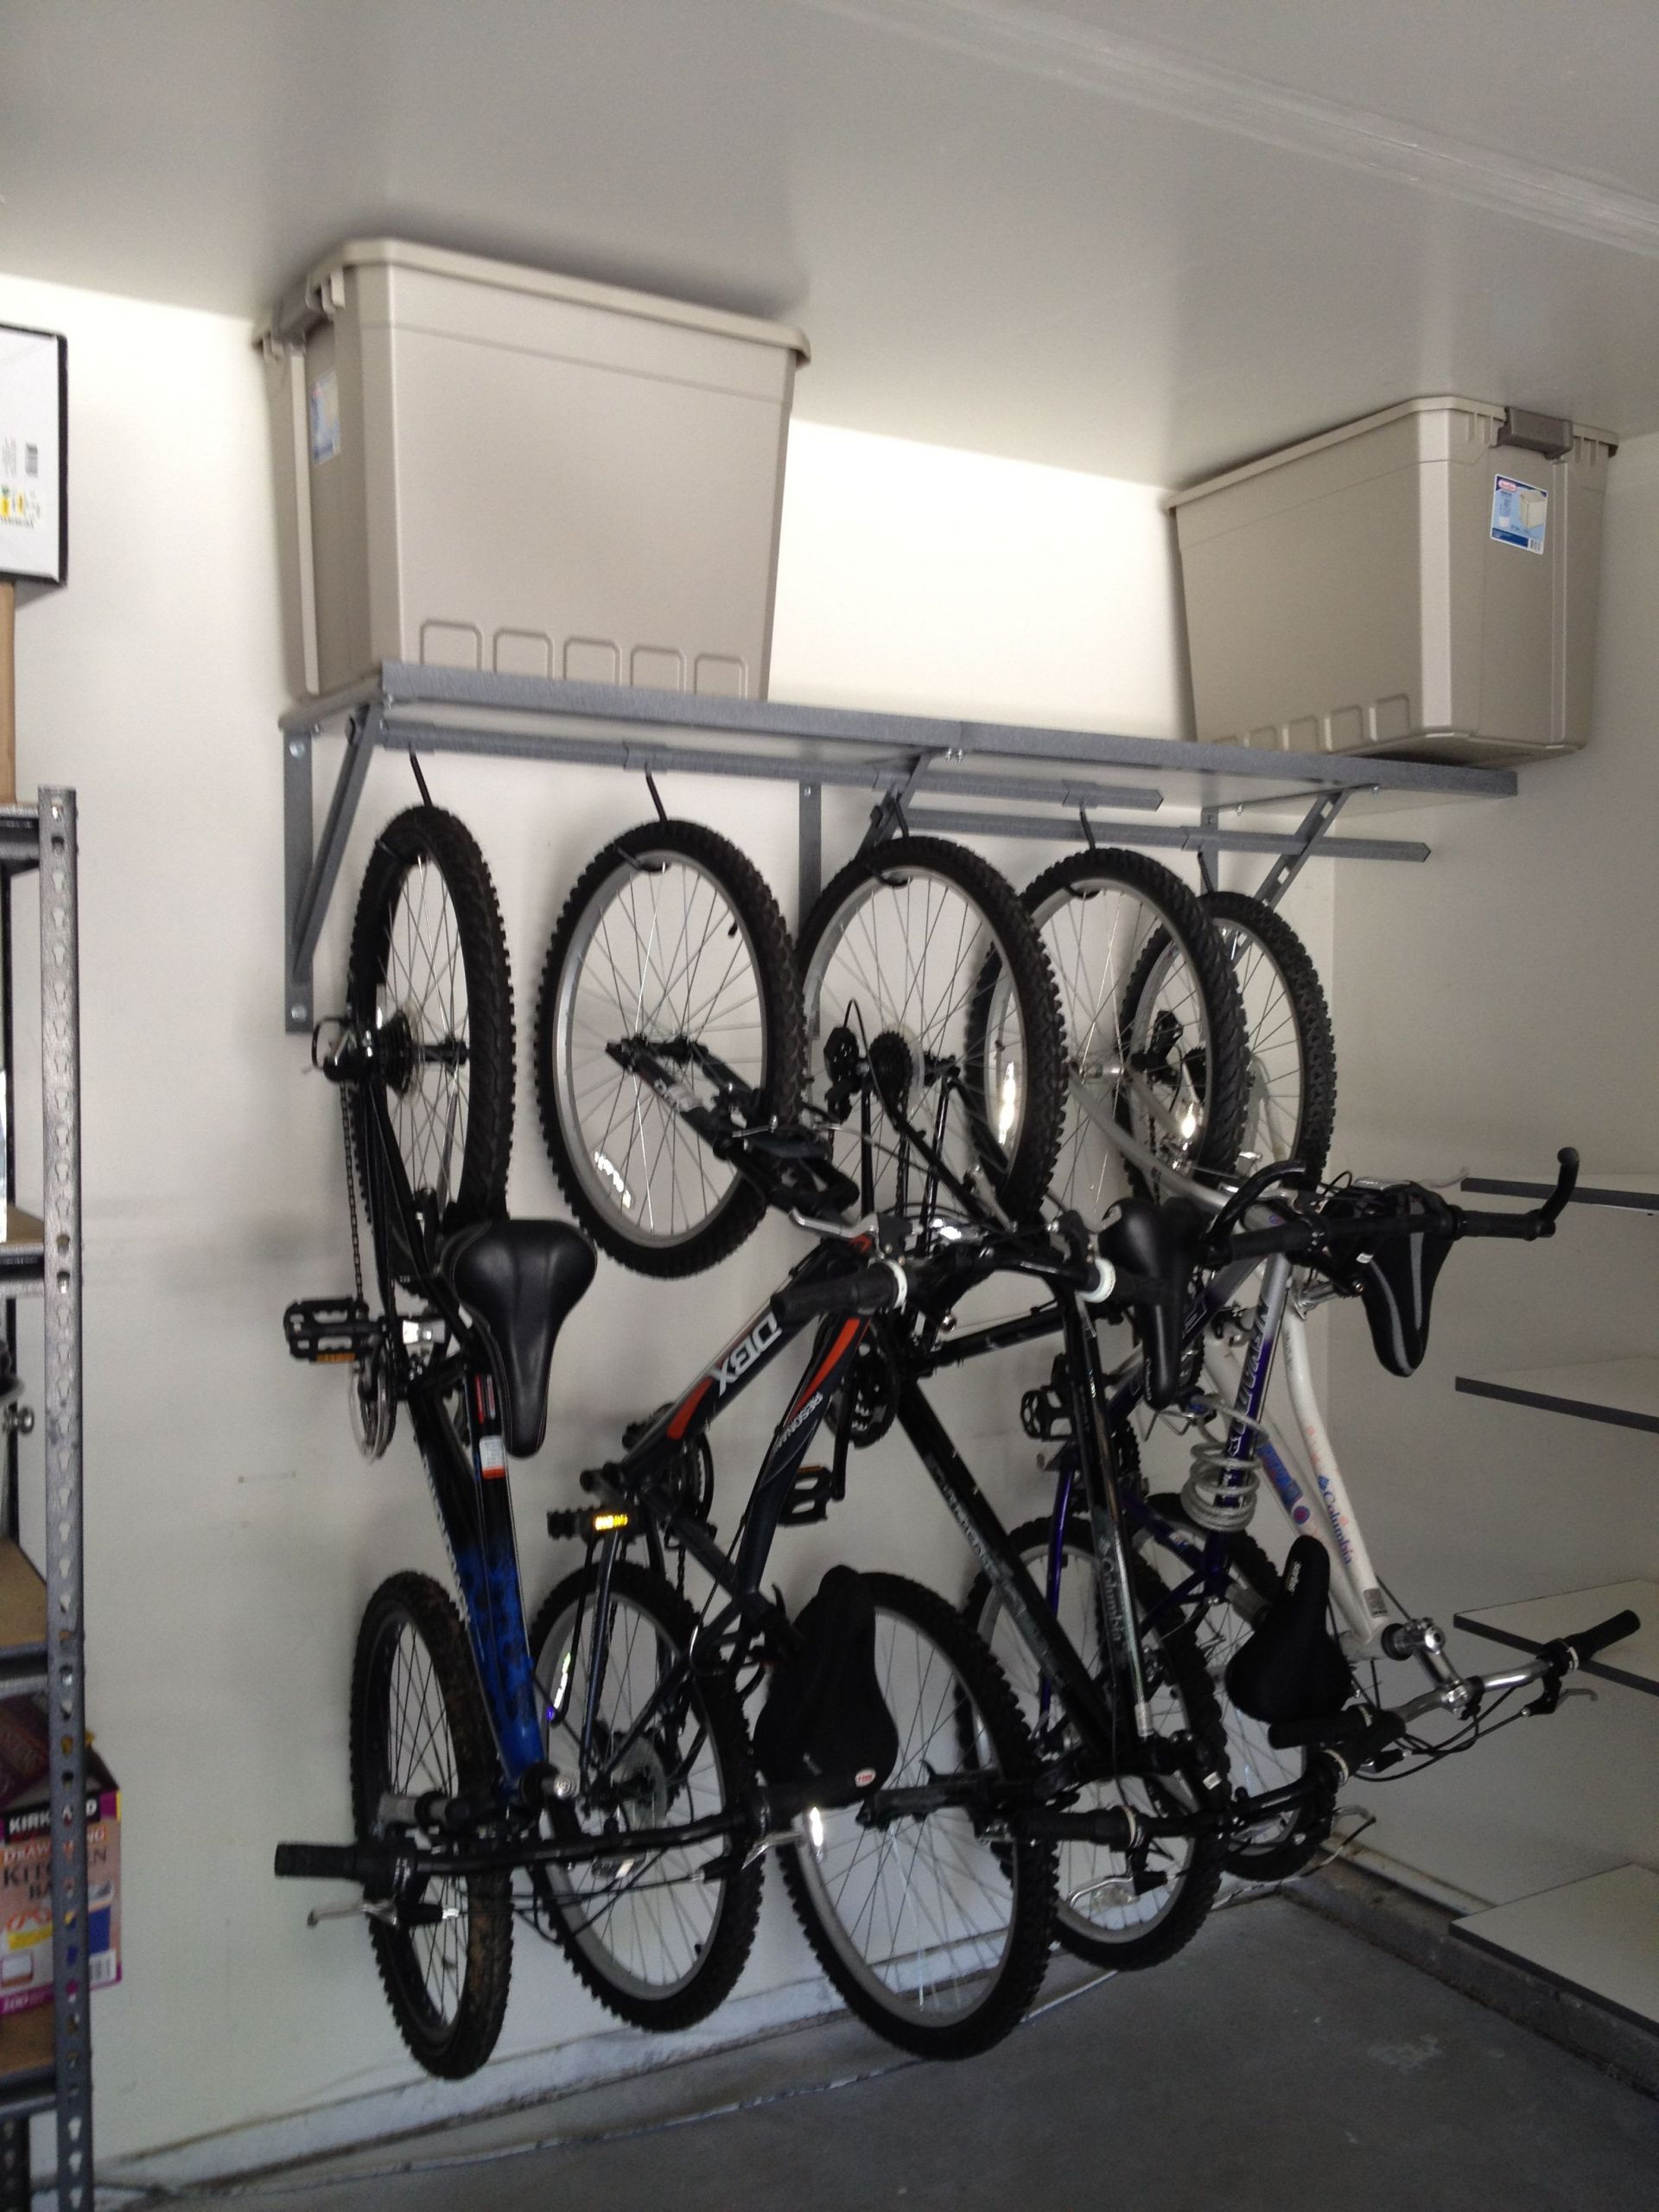 Bike Organization Garage
 garage bike storage Good ideas for the home